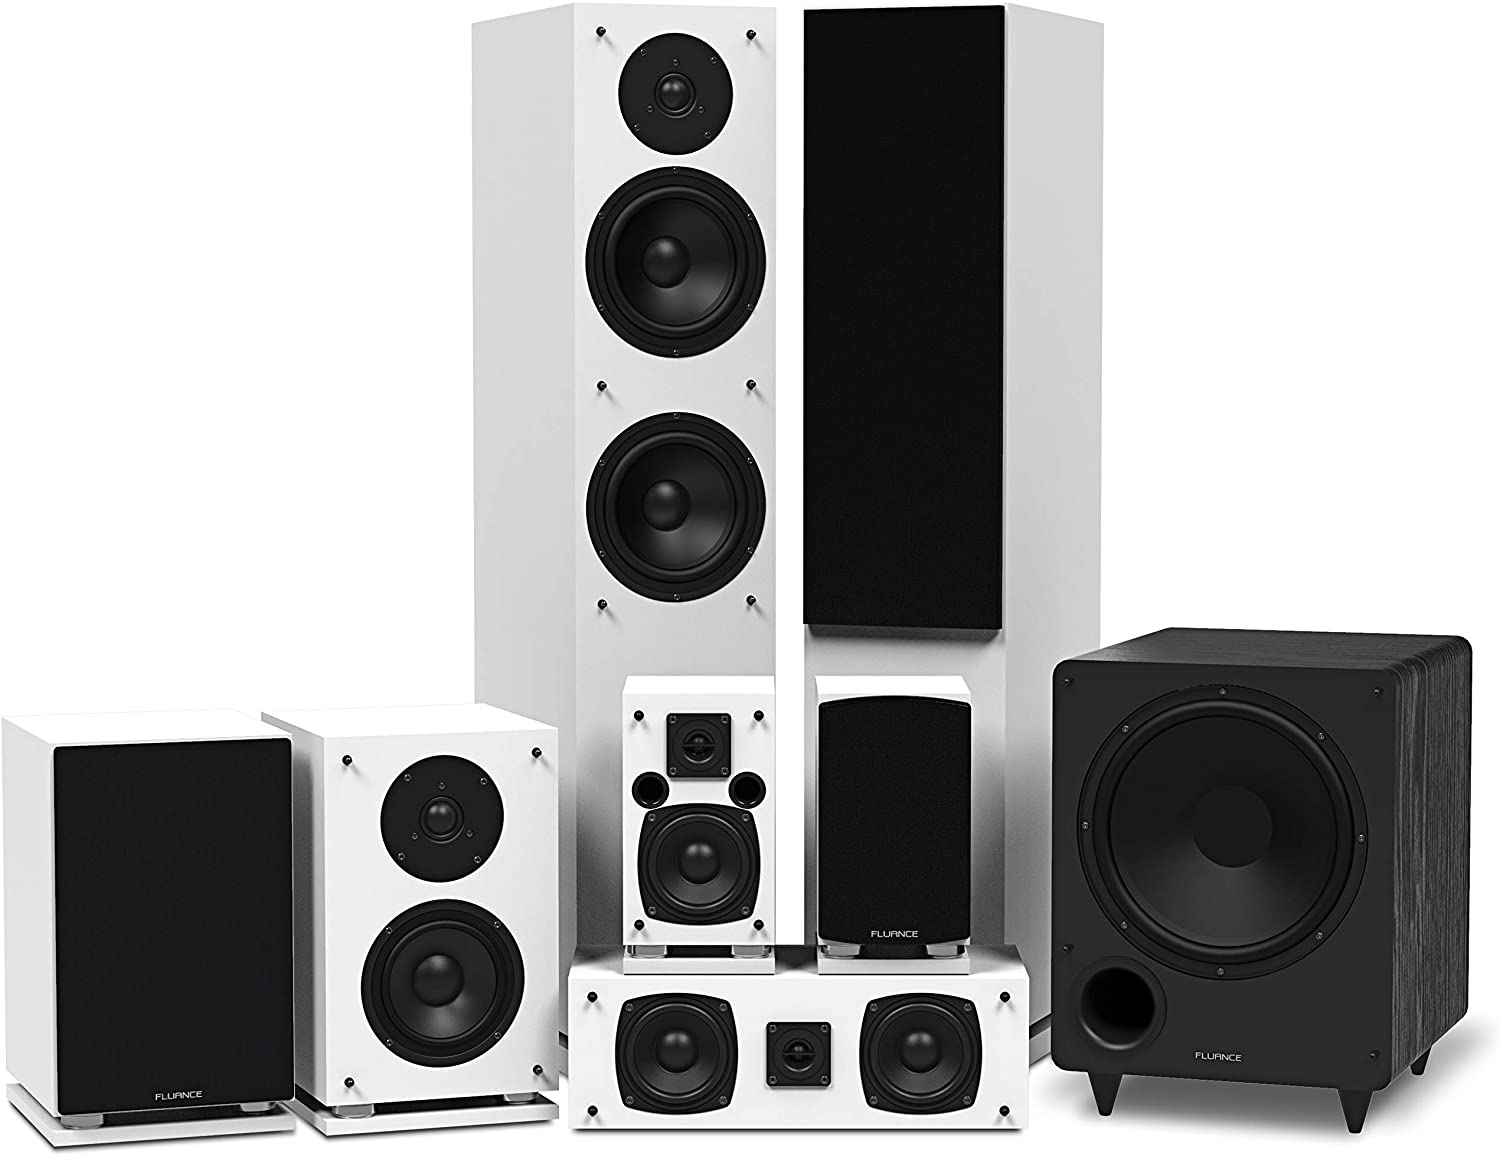 Fluance Elite Series Surround Sound Home Theater 7.1 Channel Speaker System